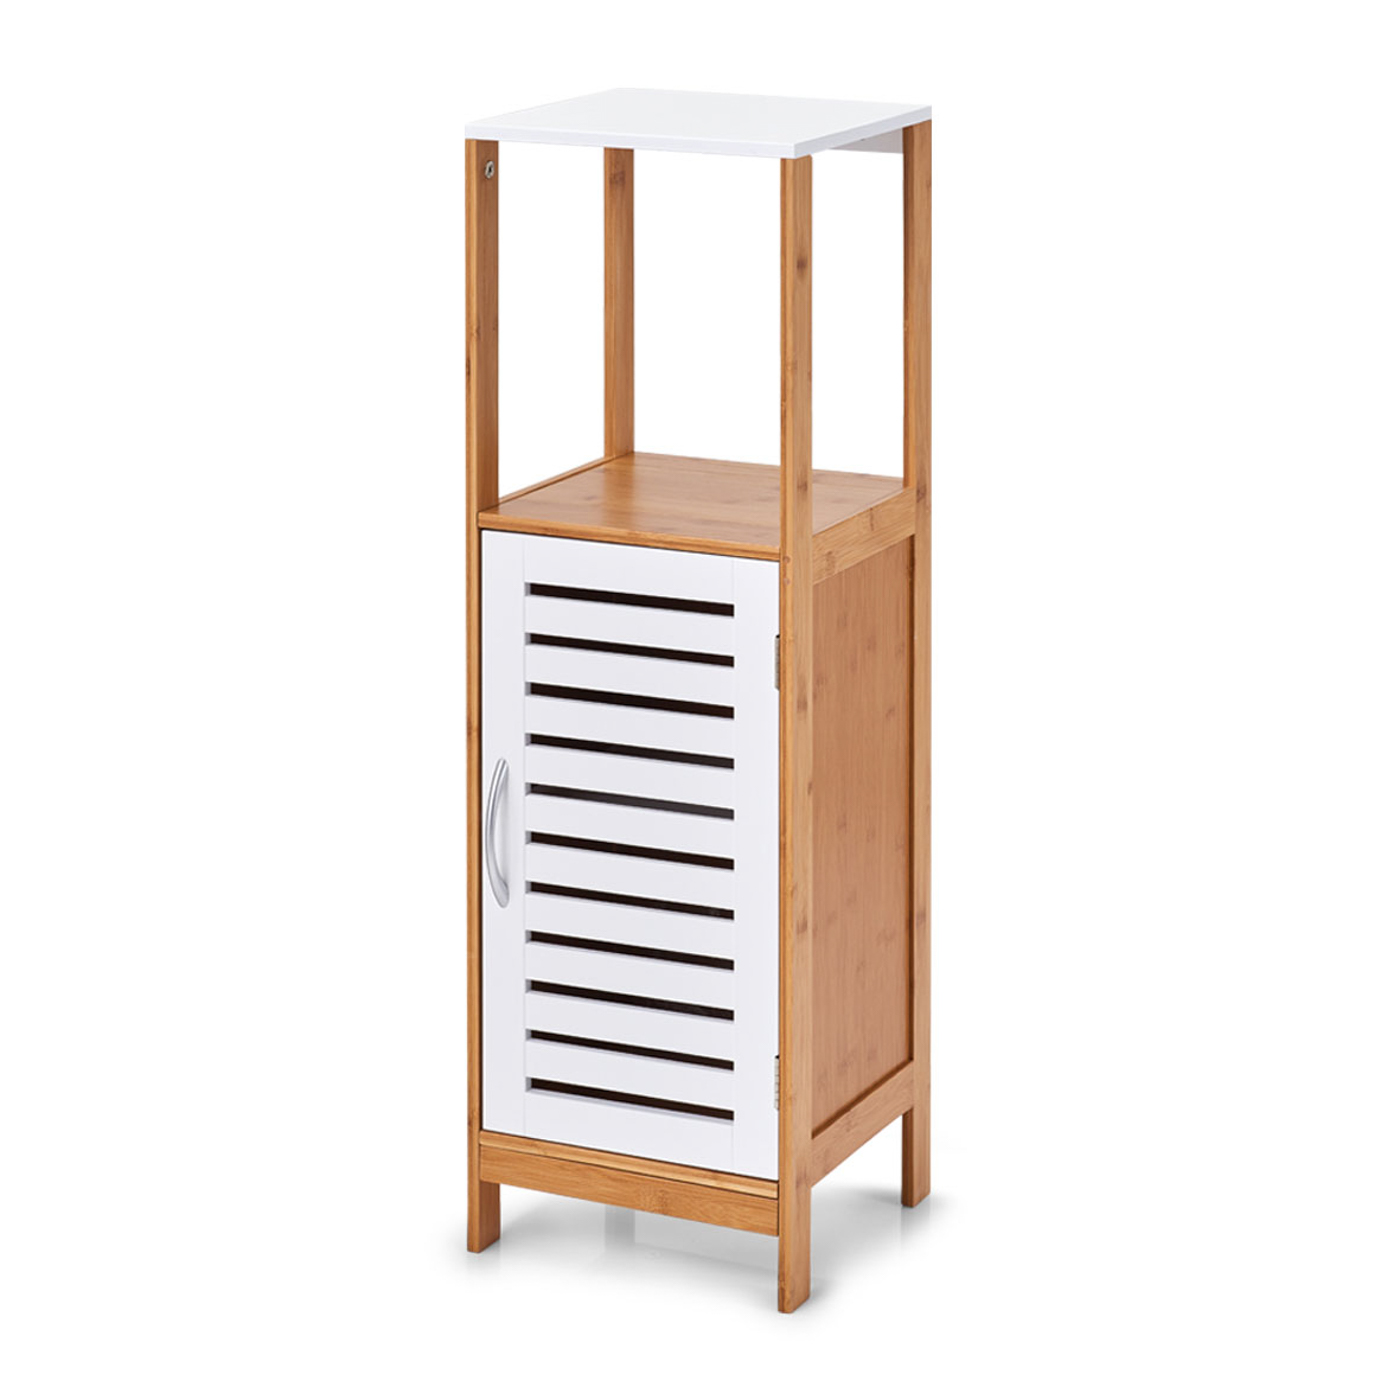 Badschrank, Bamboo; MDF, 30x30x96 cm. Farbe: weiß/bamboo. Bamboo & white - Praktischer Badschrank mit genug Stauraum für Ihre Handtücher